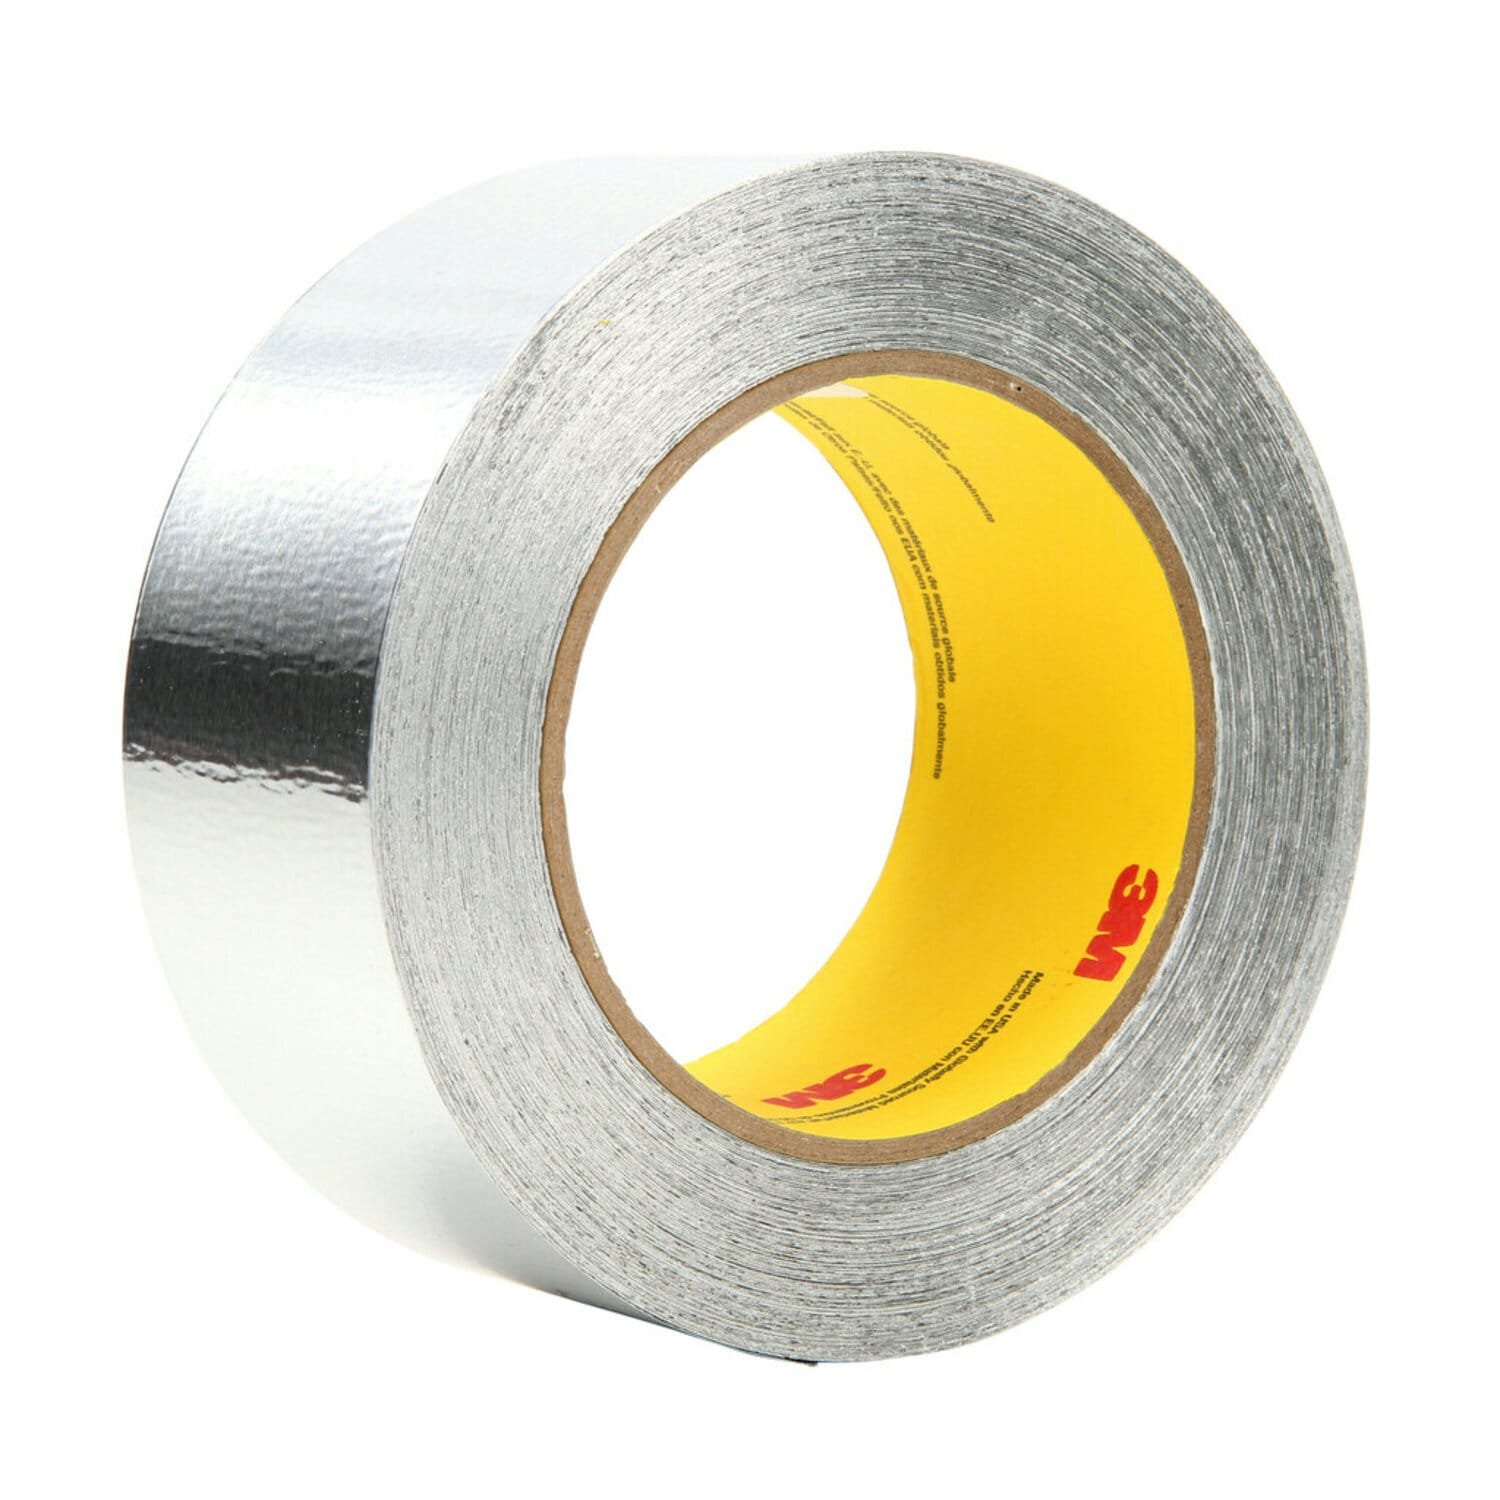 3M Aluminum Foil Tape 425, Silver, 2 in x 60 yd, 4.6 mil, 24 rolls per case